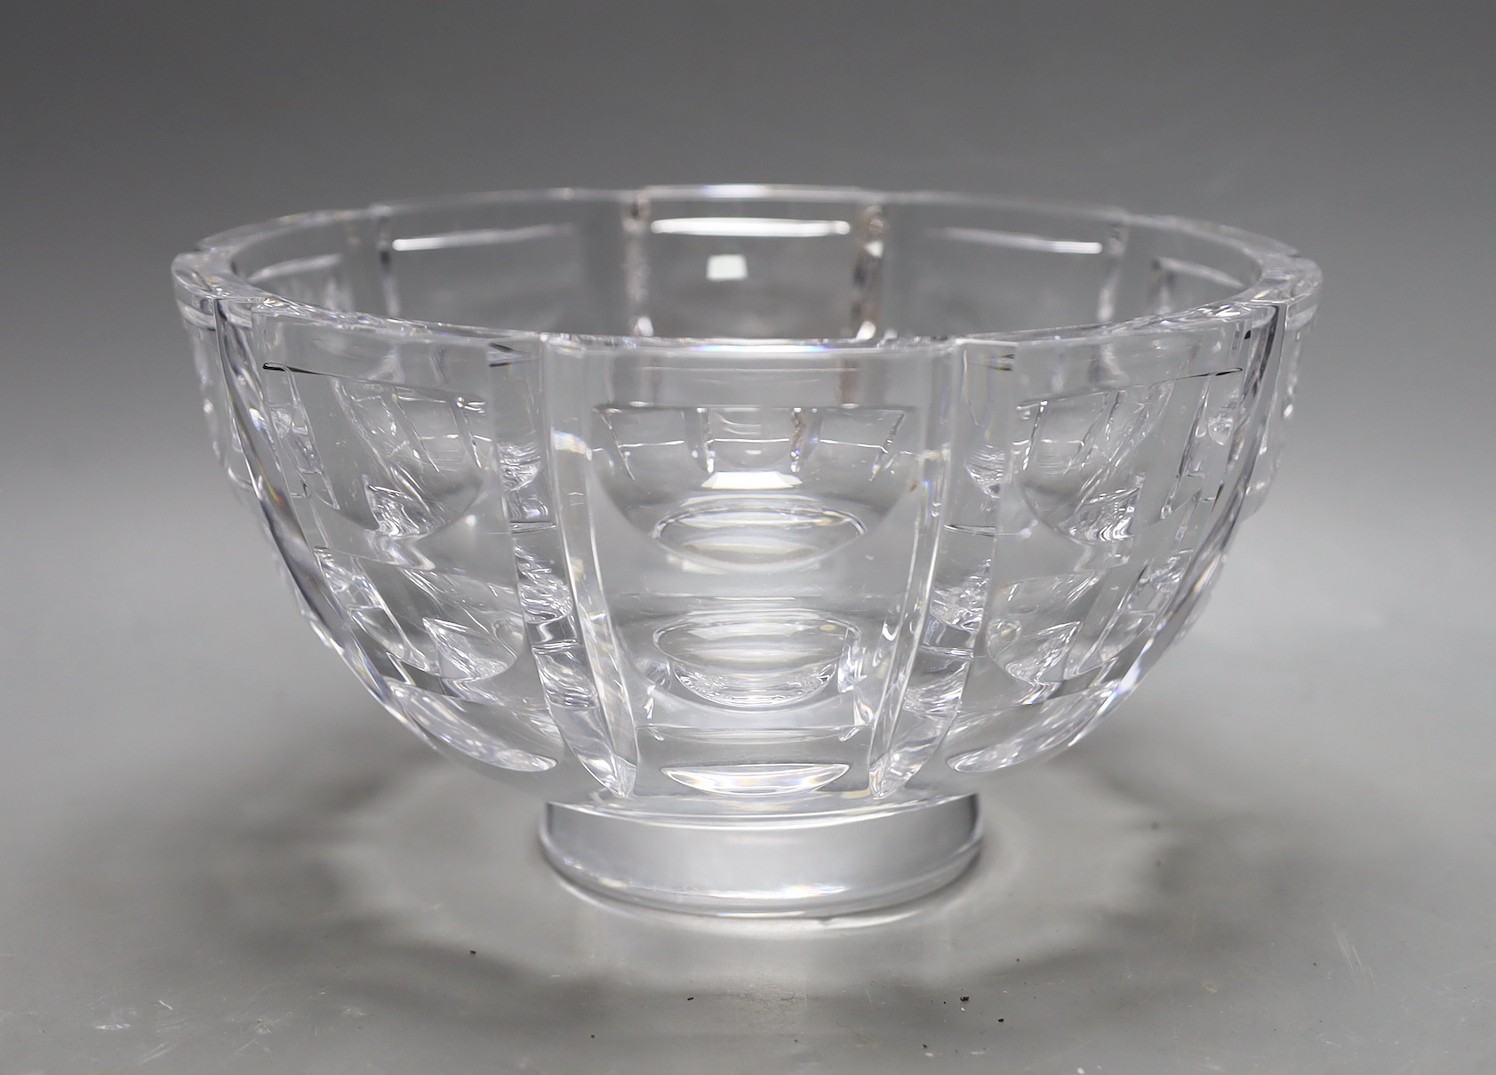 An Orrefors glass fruit bowl, 14cm